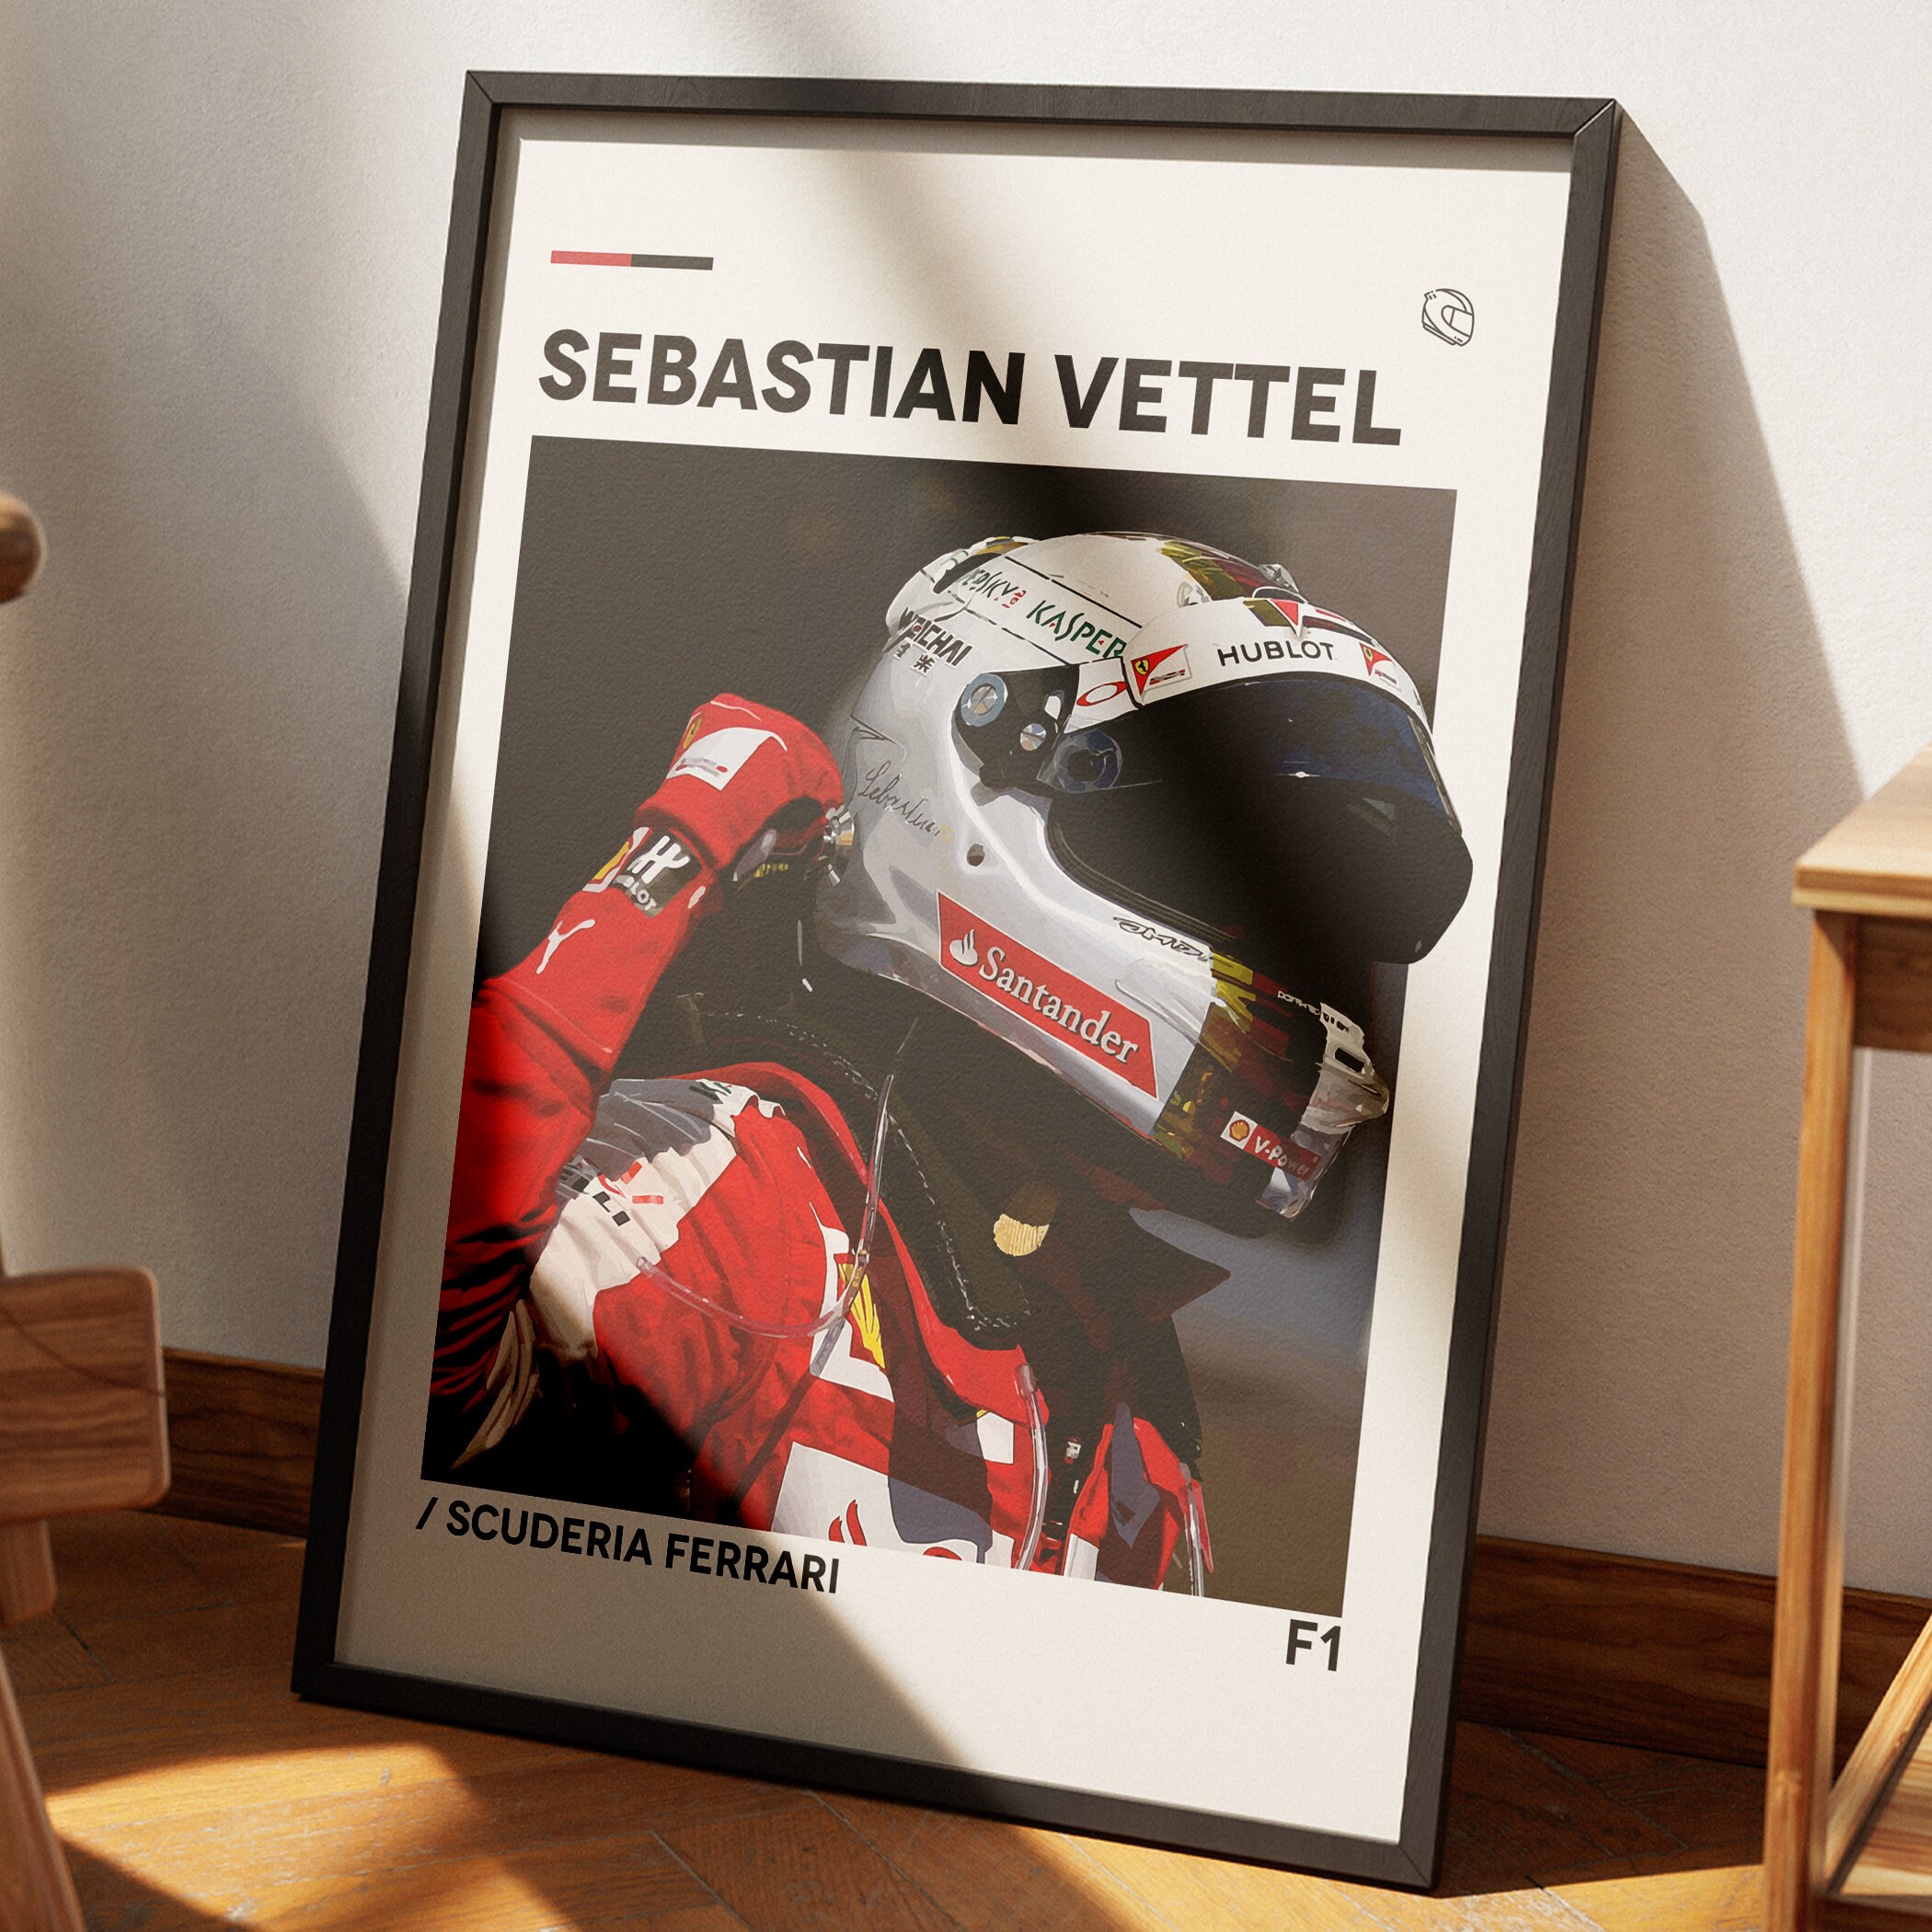 Vettel Poster - Etsy